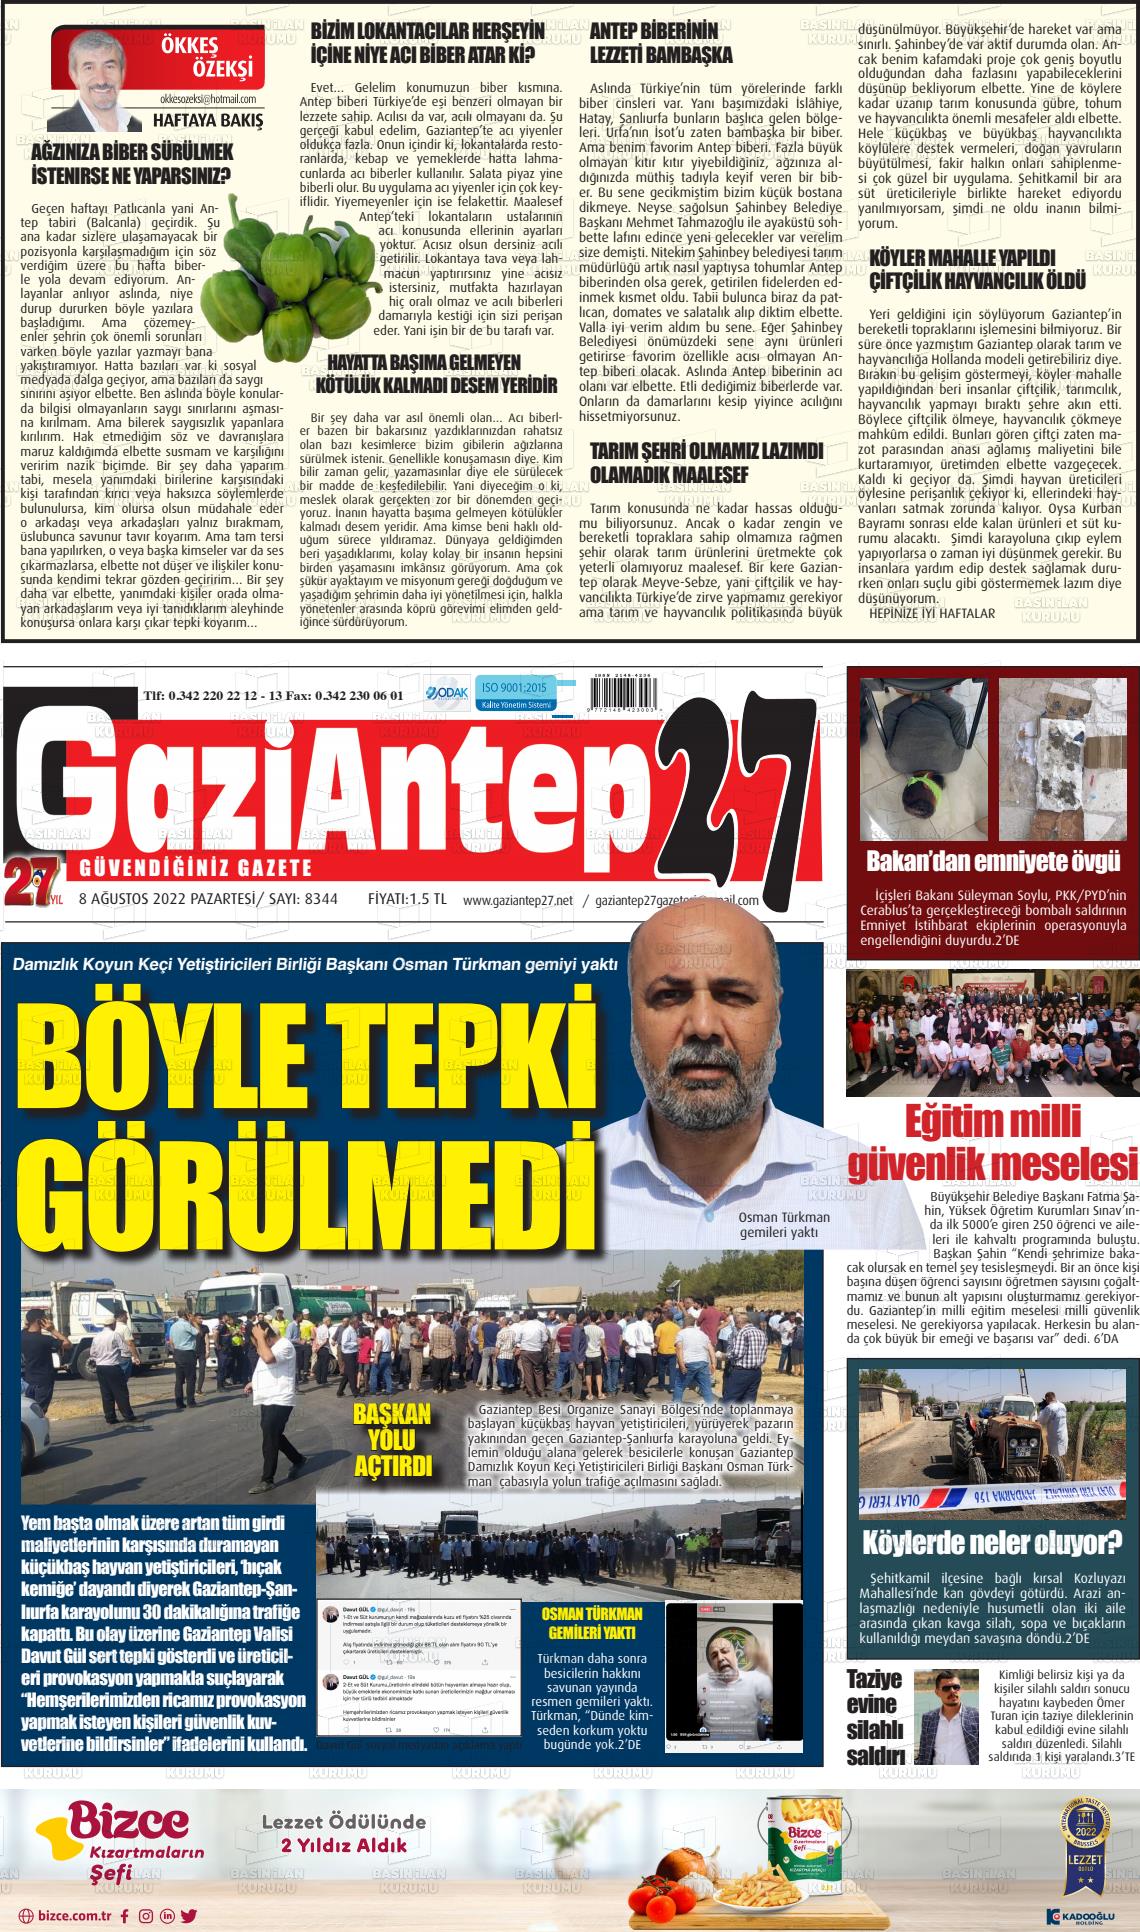 08 Ağustos 2022 Gaziantep 27 Gazete Manşeti